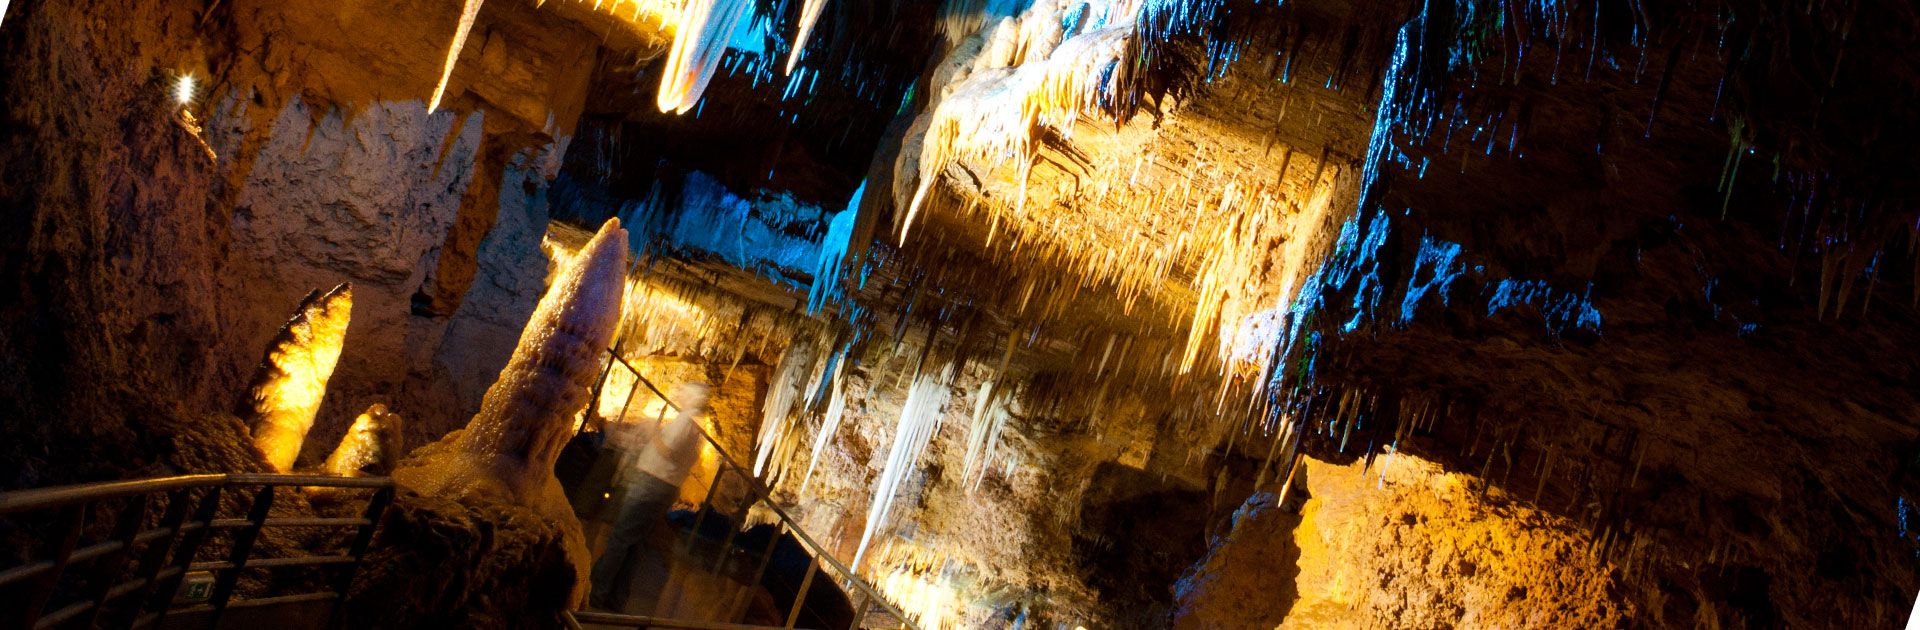 Tourtoirac grotte 100% accessible Périgord Dordogne